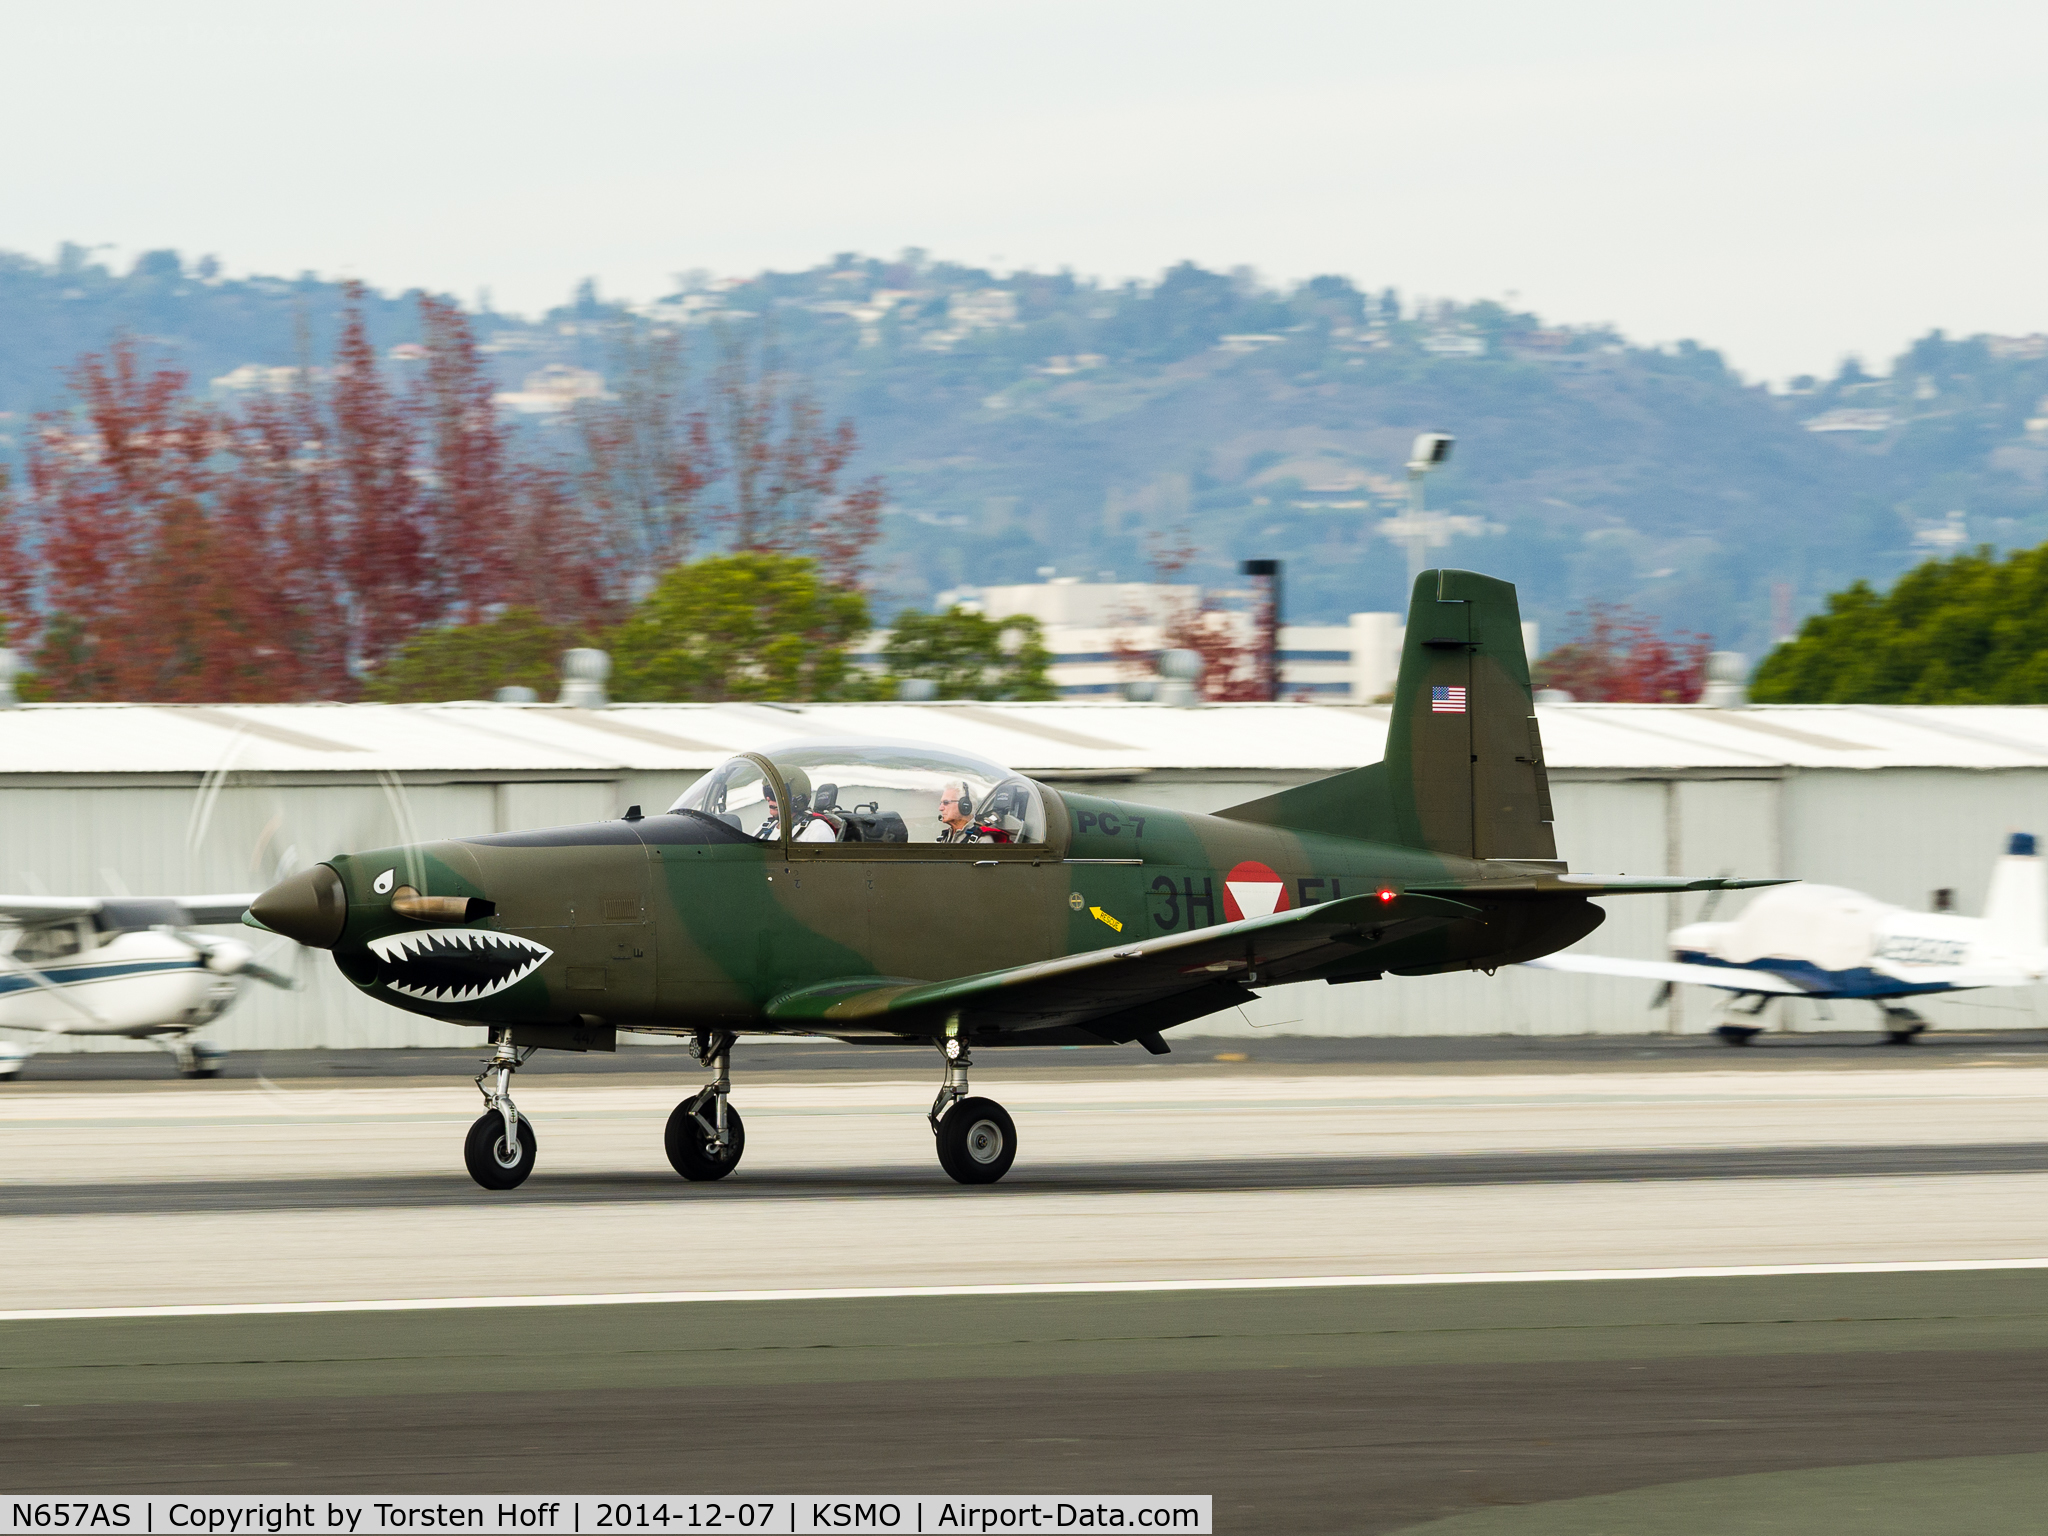 N657AS, Pilatus PC-7 C/N 447, N657AS departing from RWY 21